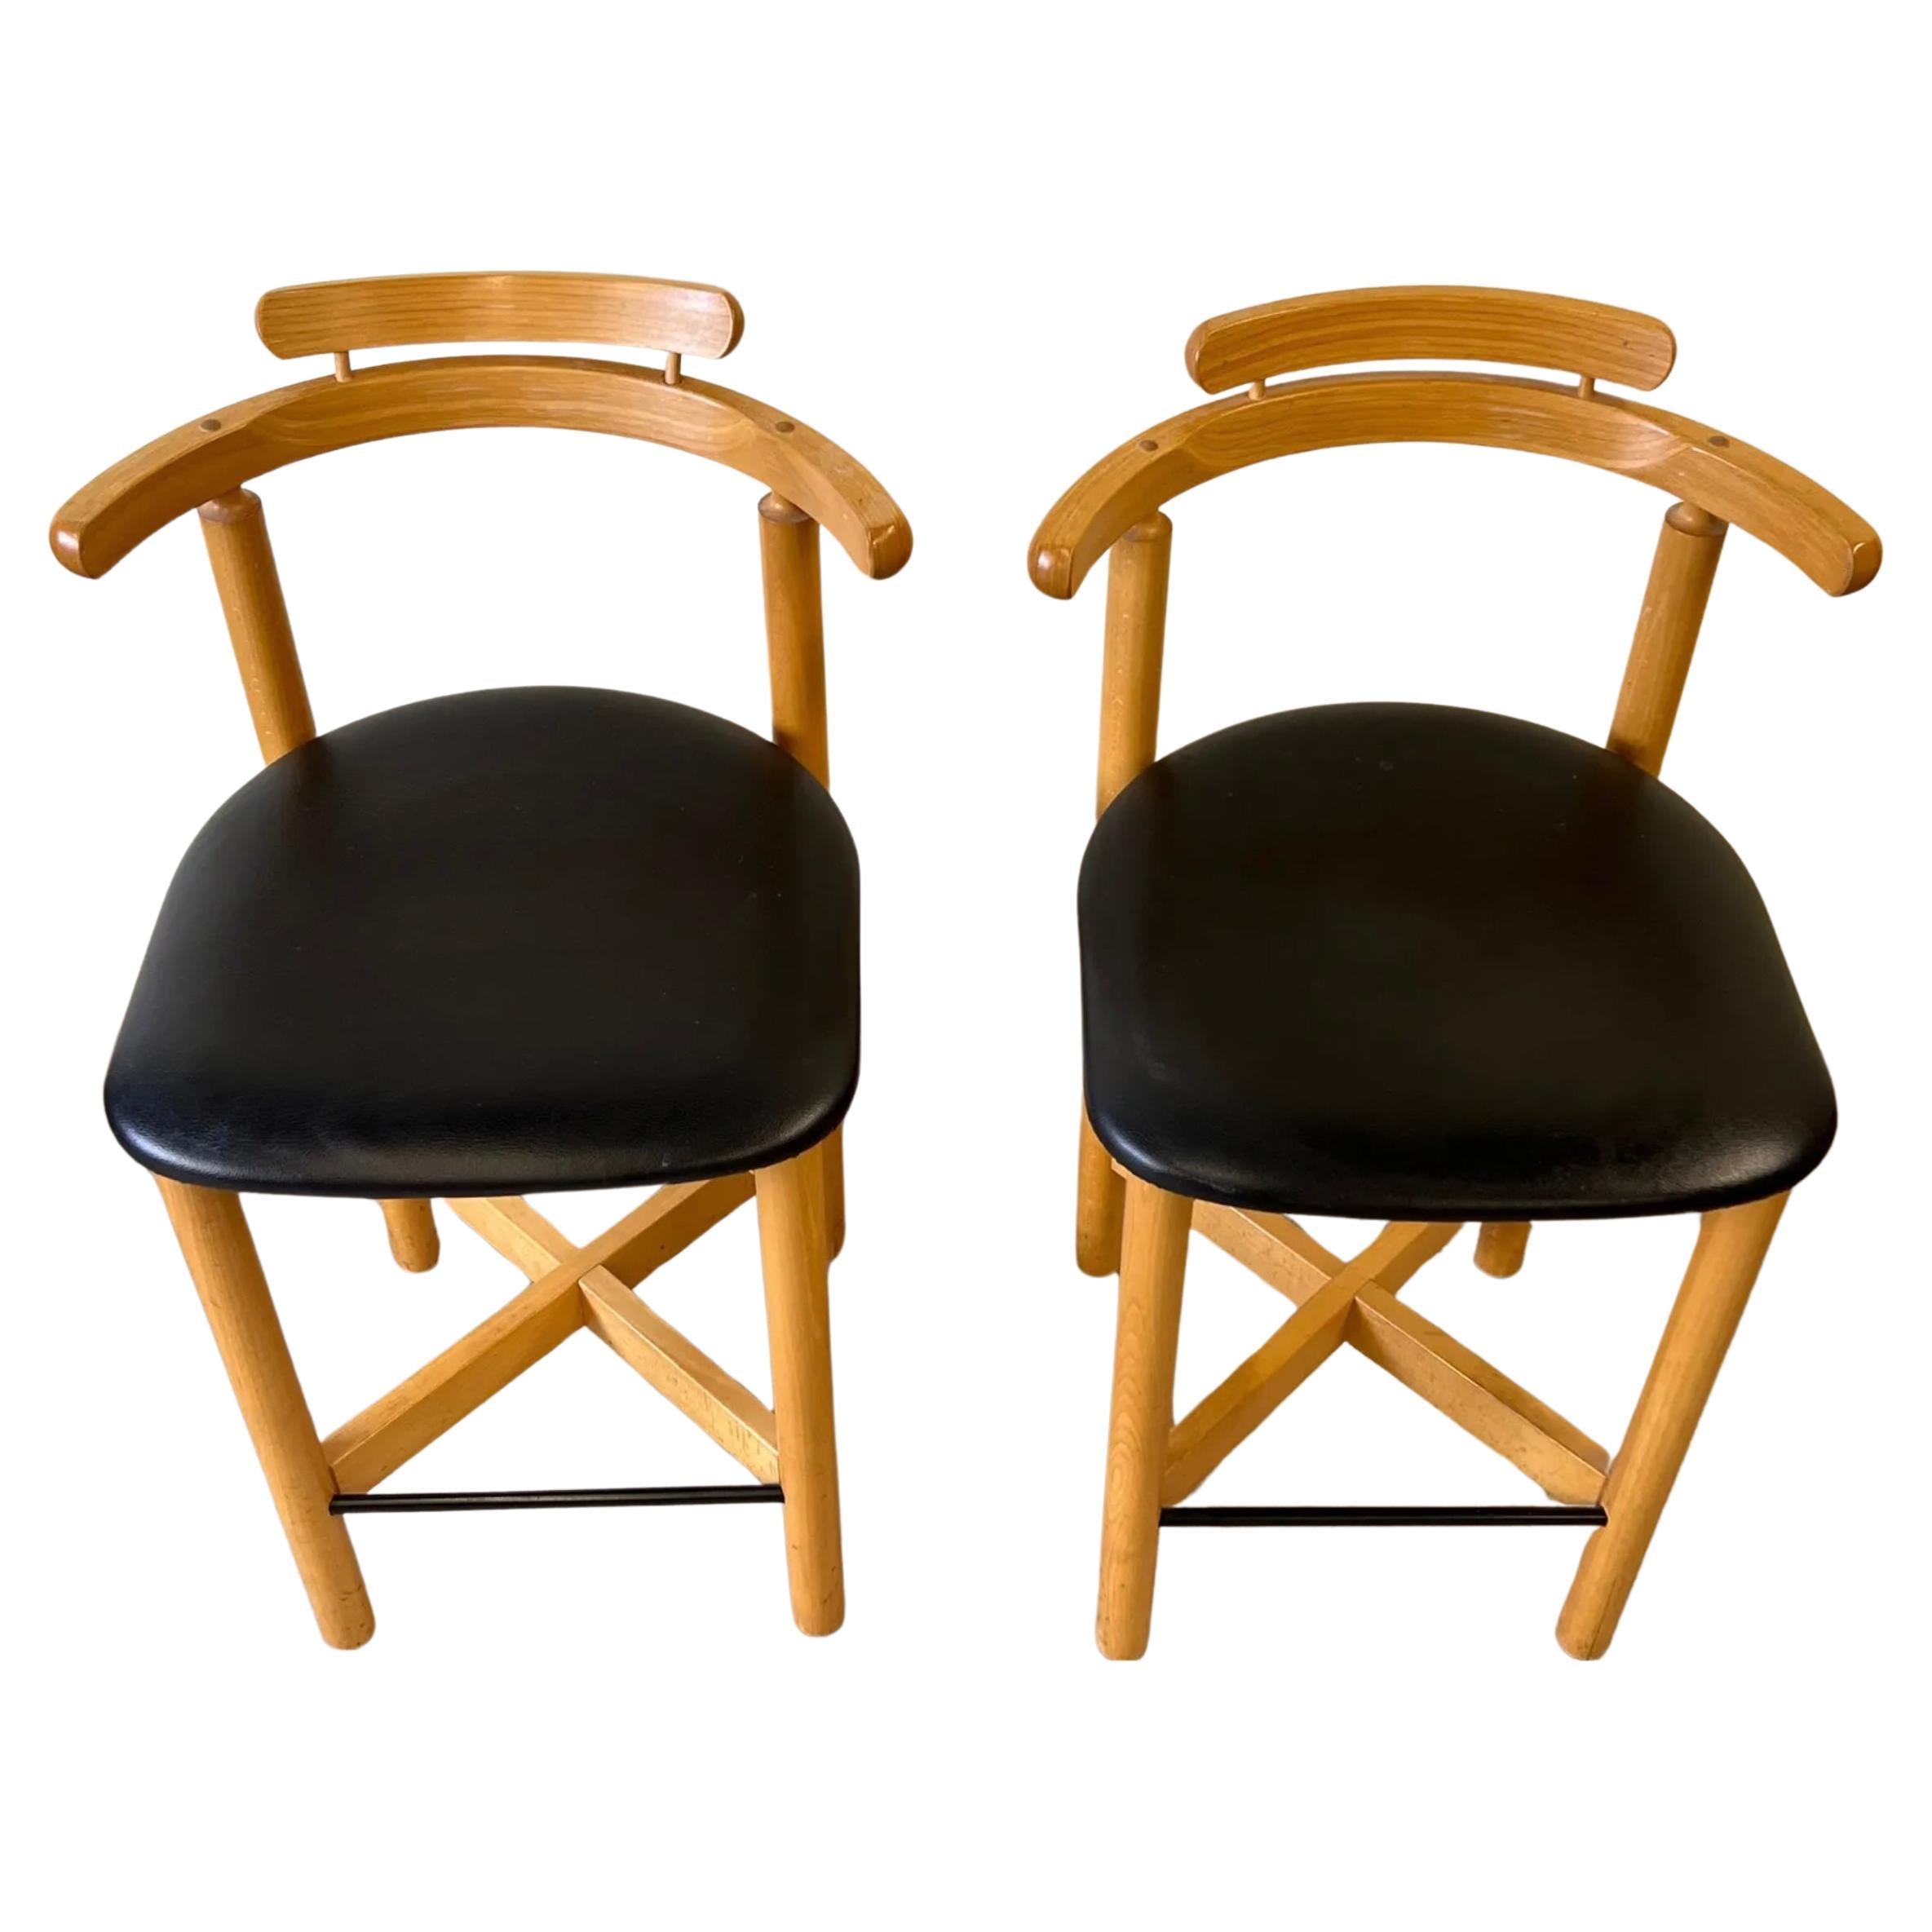 Paire de tabourets de bar modernes danois Gangsø Møbler avec base en X. Tabourets de comptoir en bois blond avec assise en tissu noir. Fabriqué au Danemark Situé à Brooklyn NYC.

34